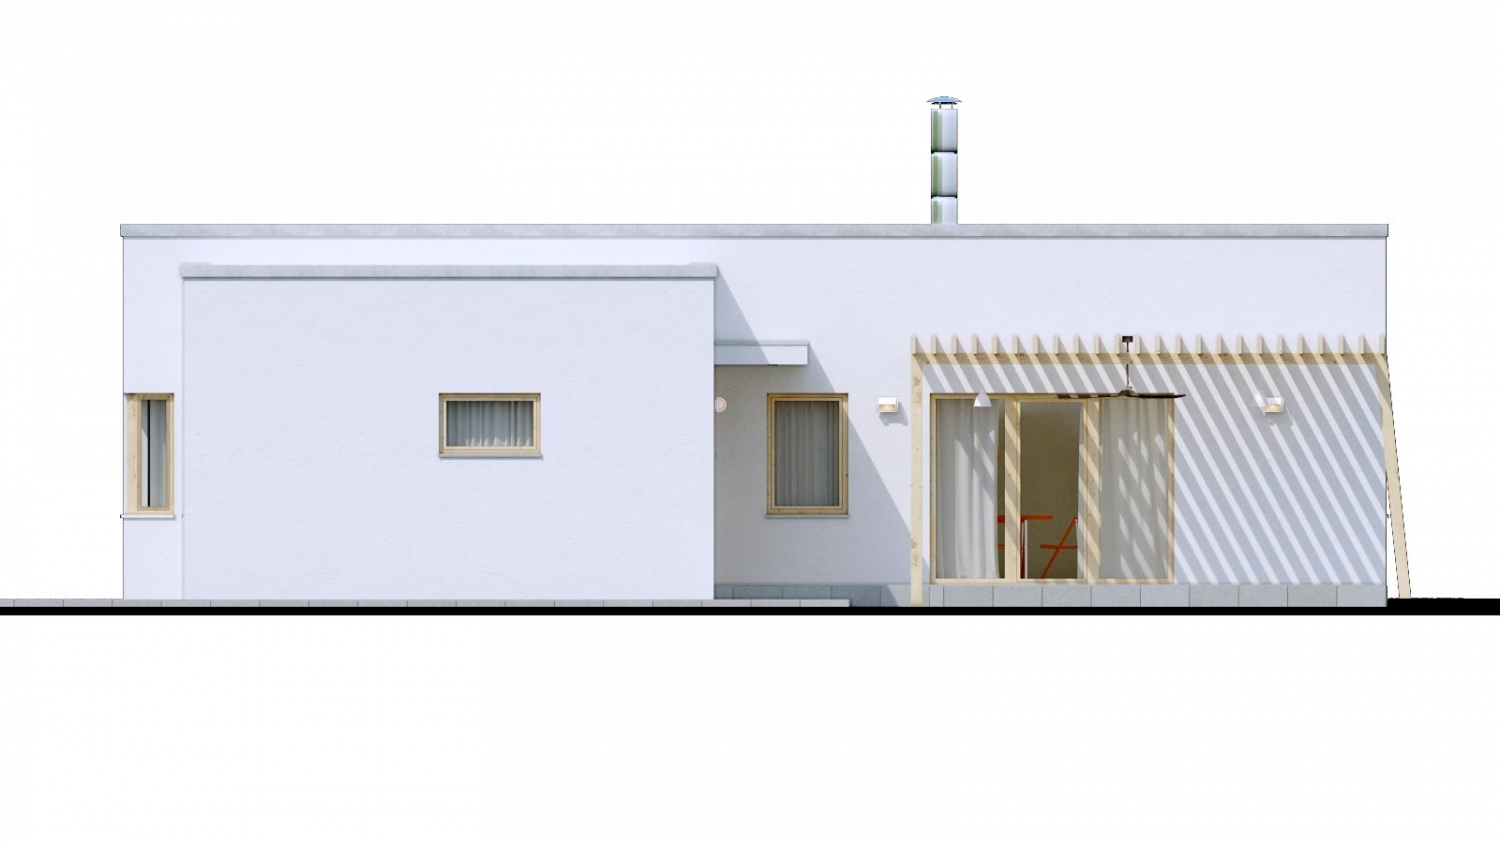 Pohľad 4. - 4-pokojový dům ve tvaru L s plochou střechou. Kuchyň s obývákem tvoří velkoprostor.